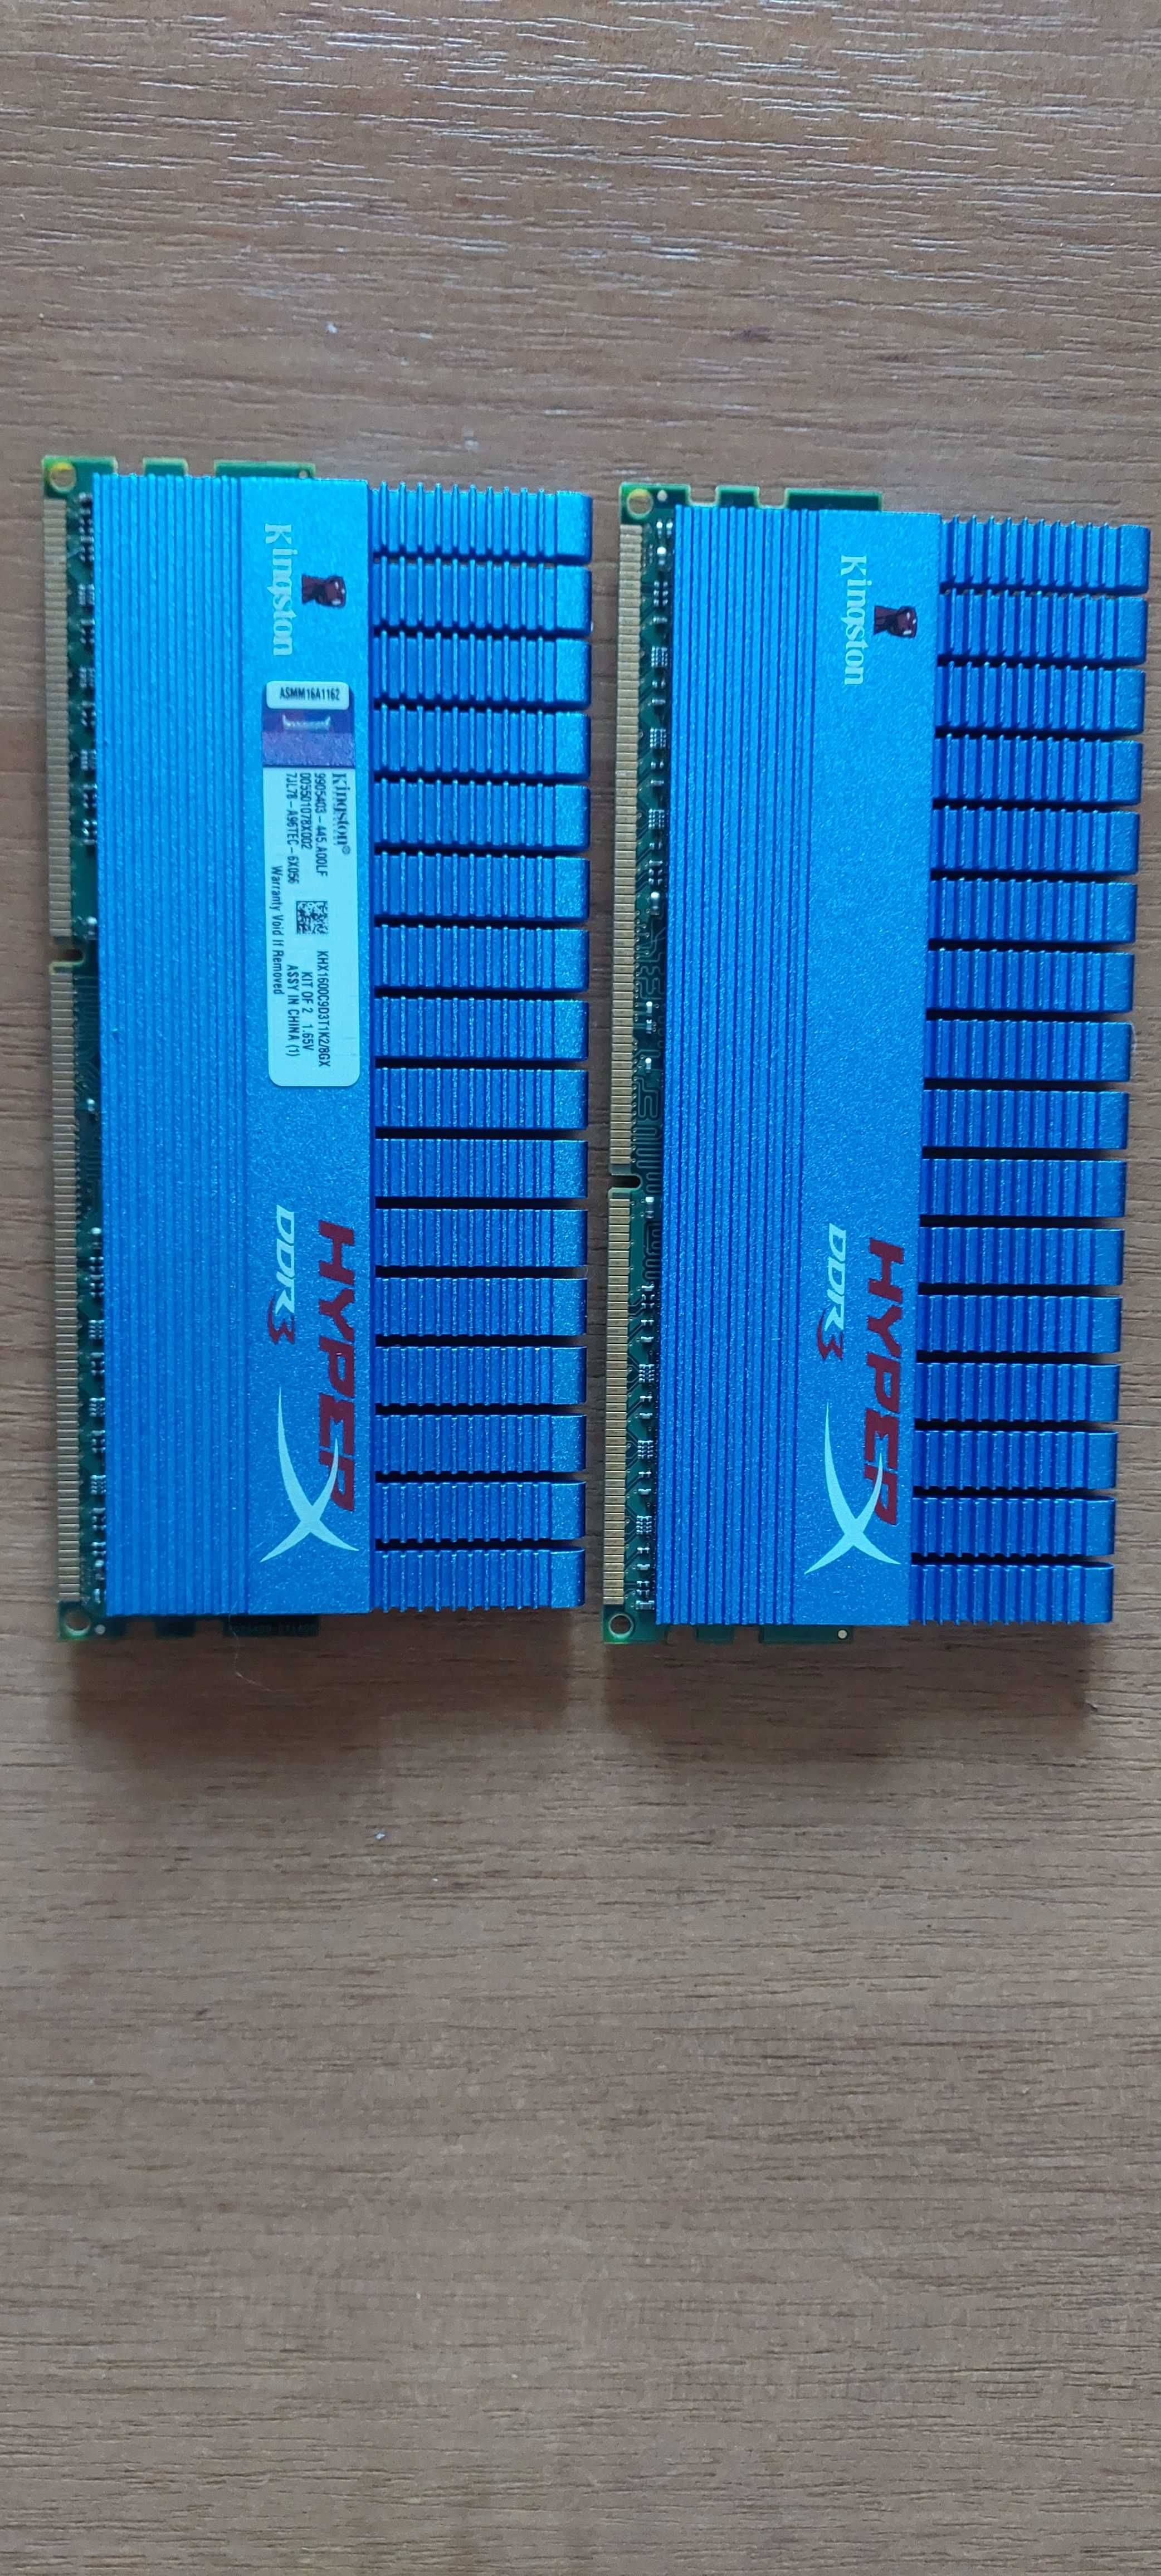 ОЗУ 4ГБ+4ГБ DDR3-1600 (800МГц)